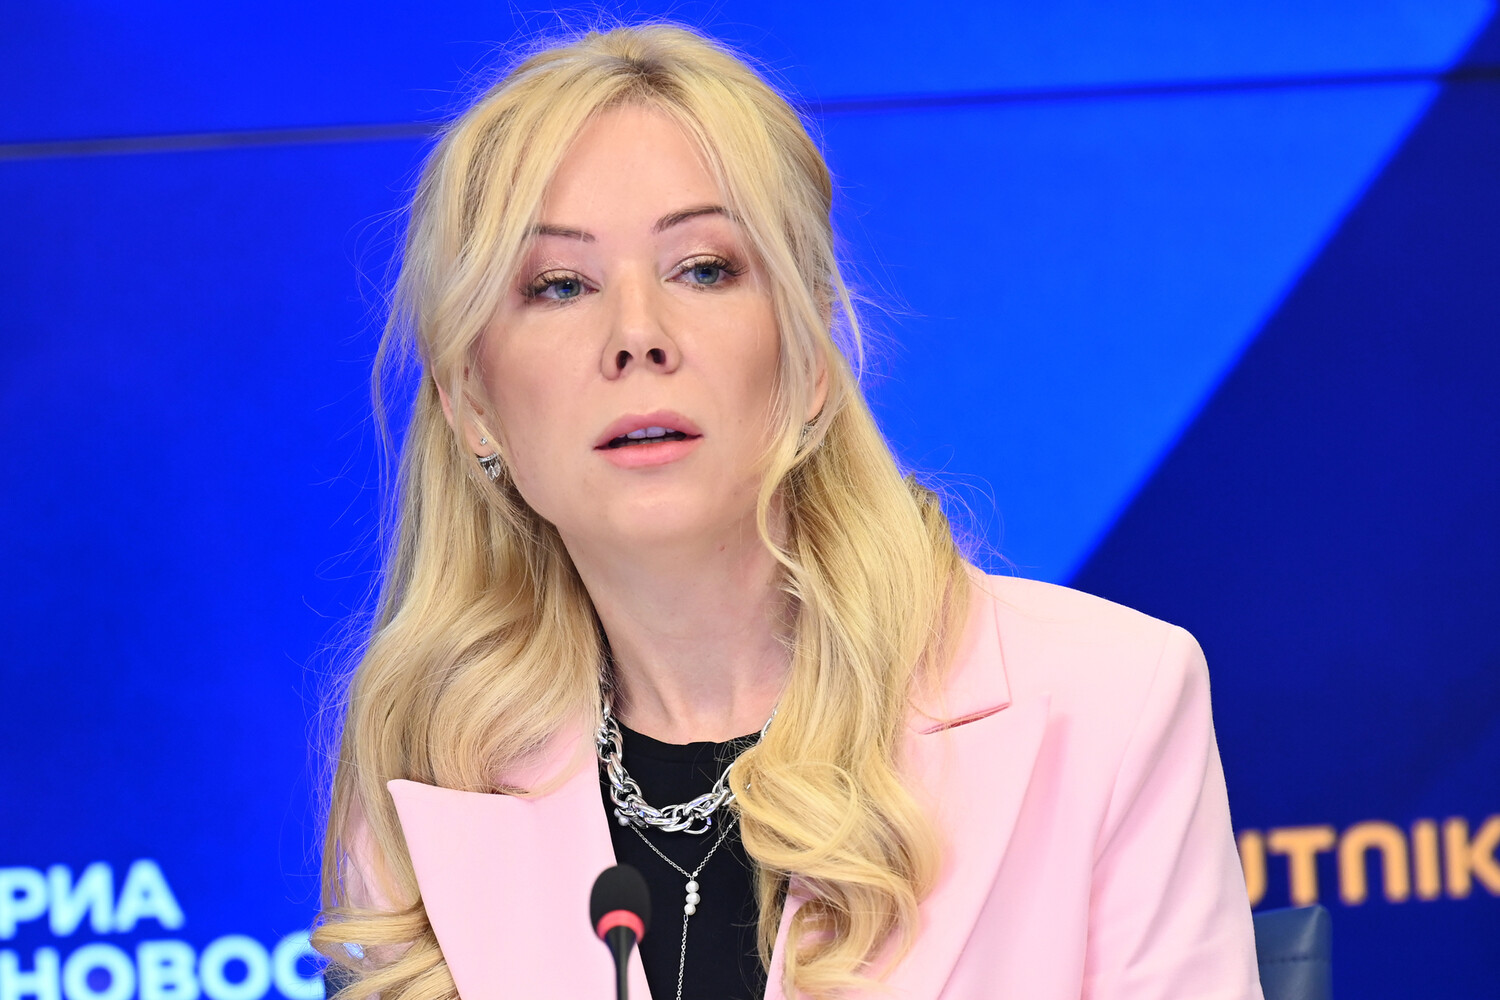 Екатерина Мизулина обратилась в органы из-за лидера движения инцелов Поднебесного